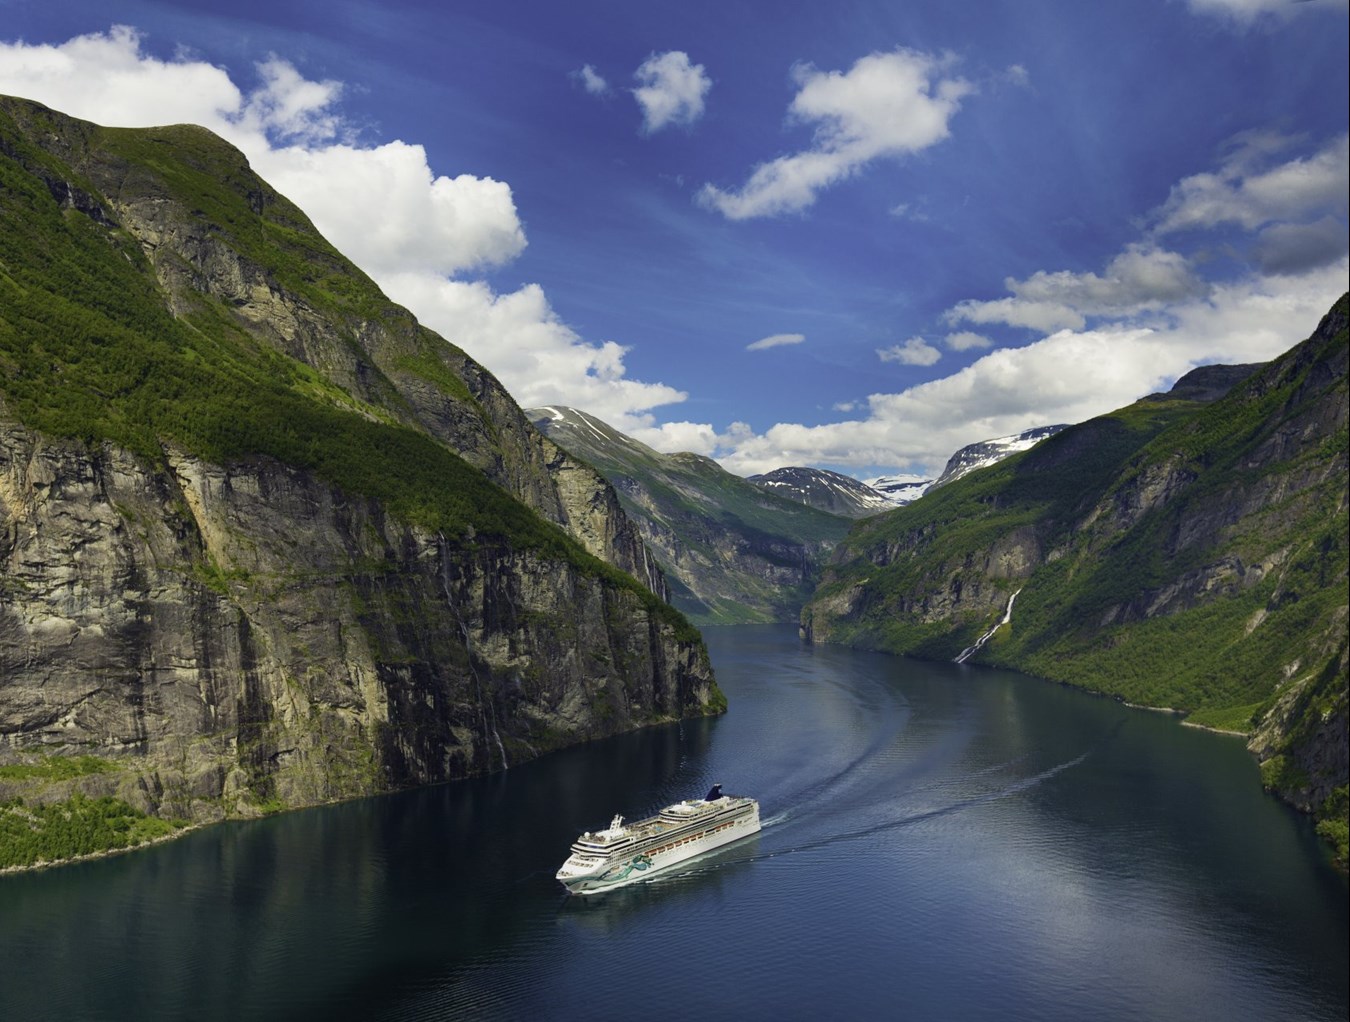 noorwegen cruise 2023